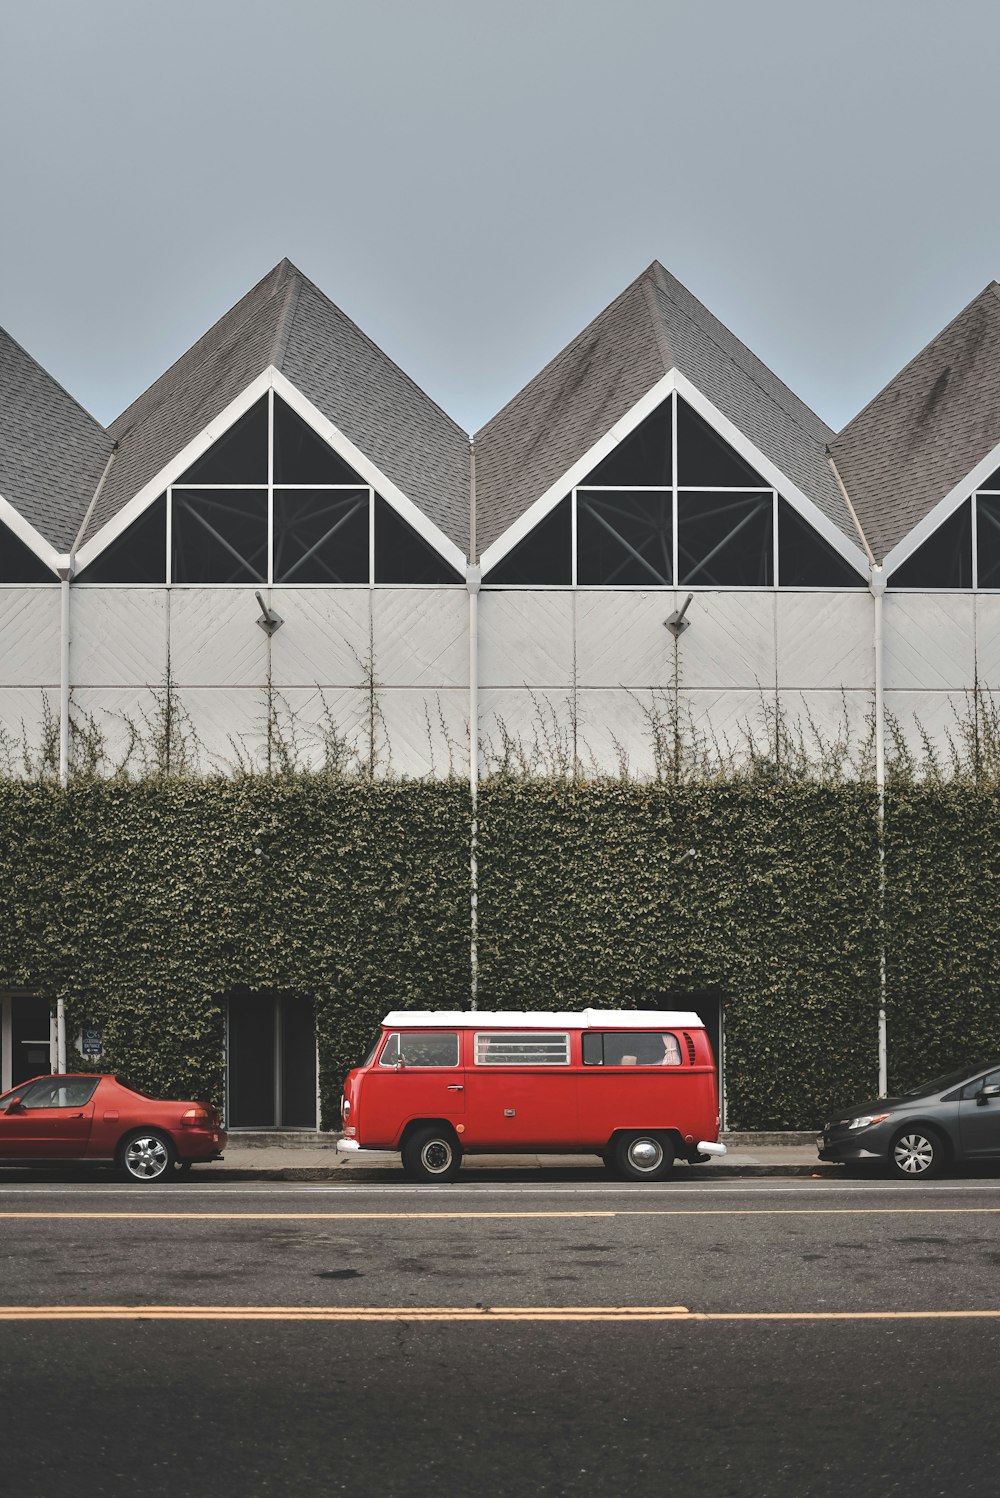 rot-weißer VW-Bus parkt vor rebenbewachsener Mauer